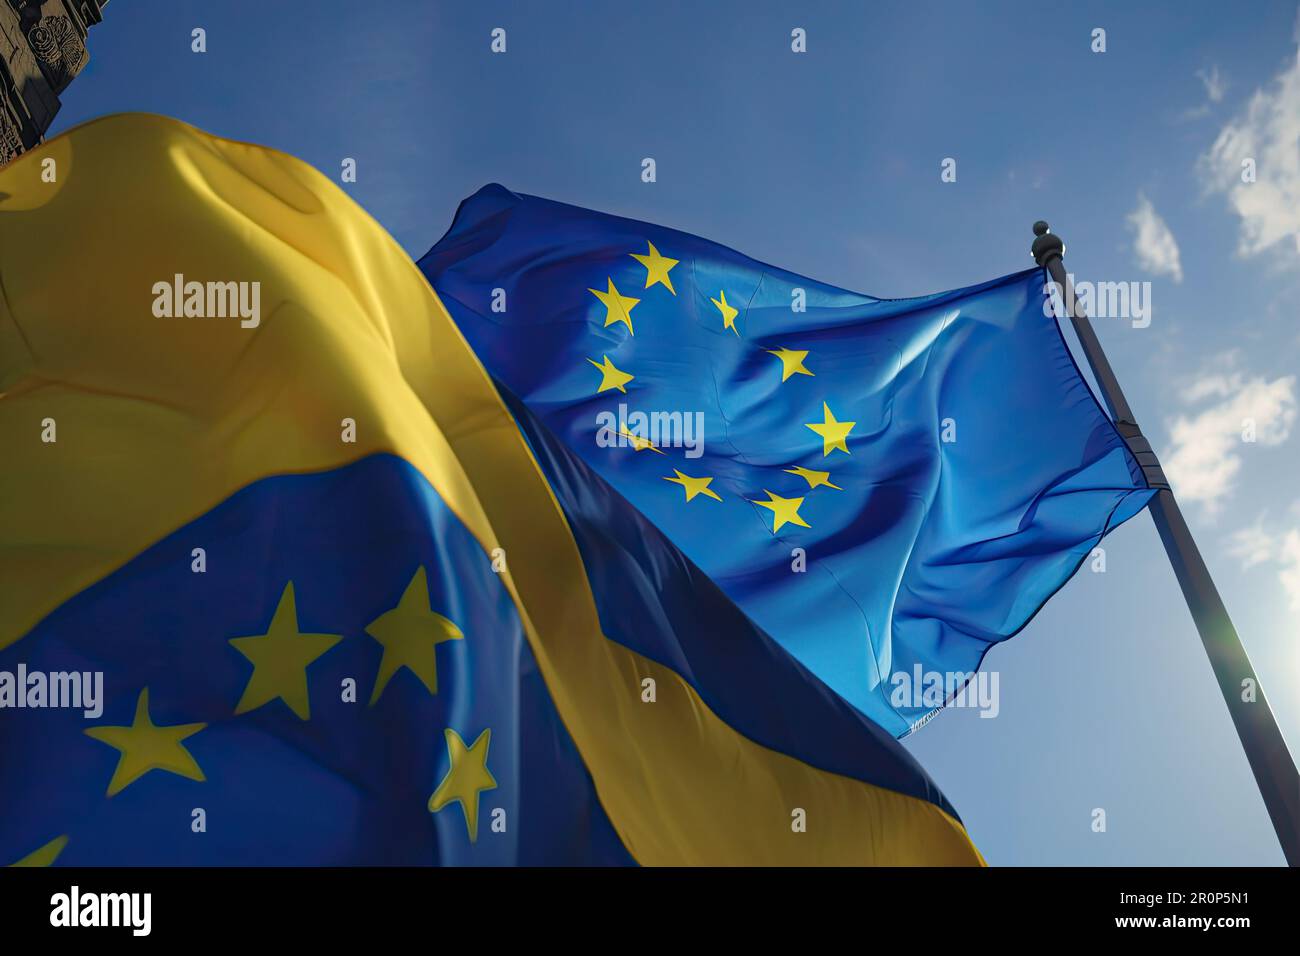 Die Flaggen der Ukraine und der Europäischen Union winken gemeinsam und zeigen ihre Unterstützung für die EU-Mitgliedschaft der Ukraine und den Kampf des Landes gegen die Invasion. Europea Stockfoto